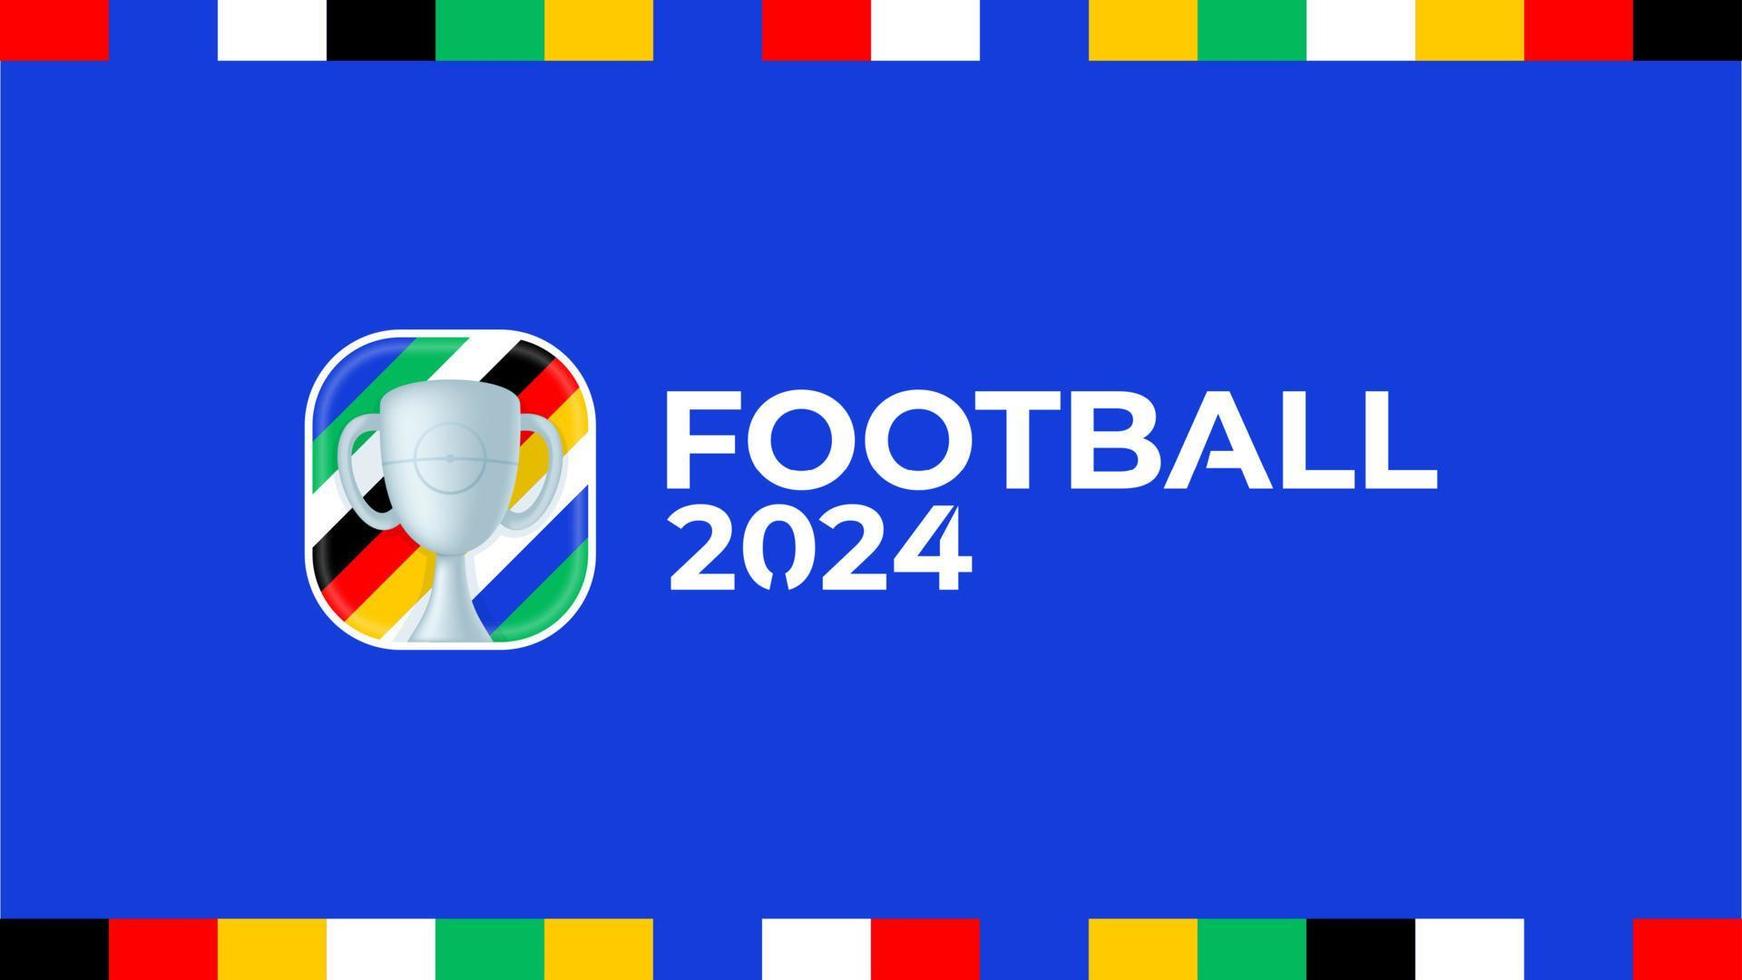 2024 football championship vector logo. Football or soccer 2024